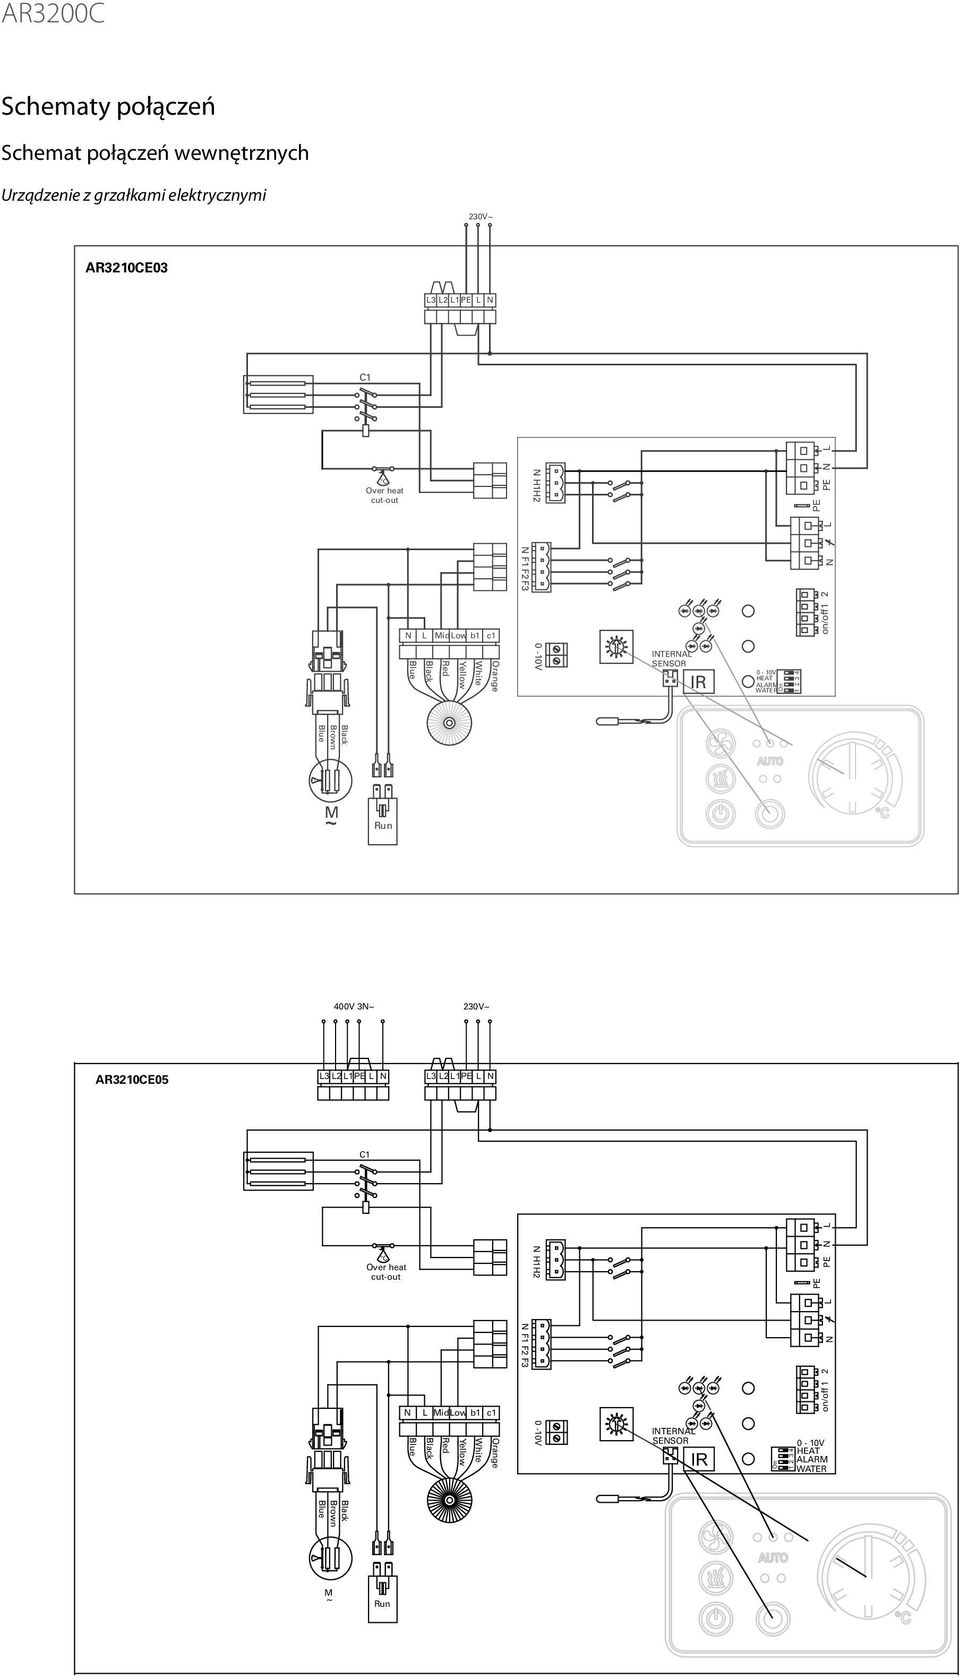 Schemat połączeń wewnętrznych Urządzenie z grzałkami elektrycznymi